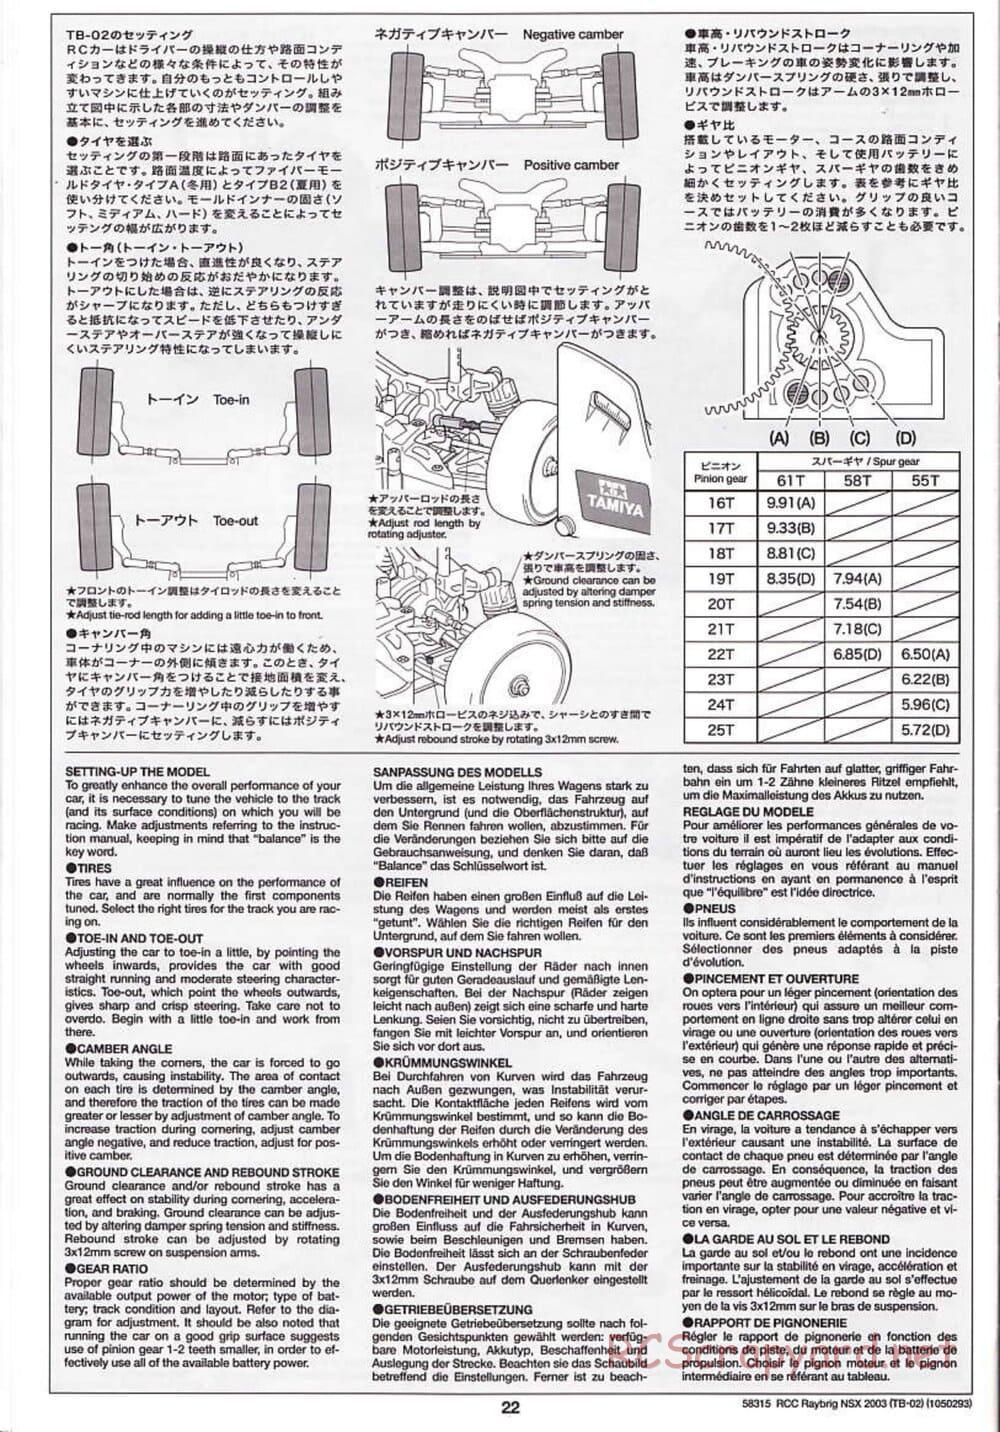 Tamiya - Raybrig NSX 2003 - TB-02 Chassis - Manual - Page 22